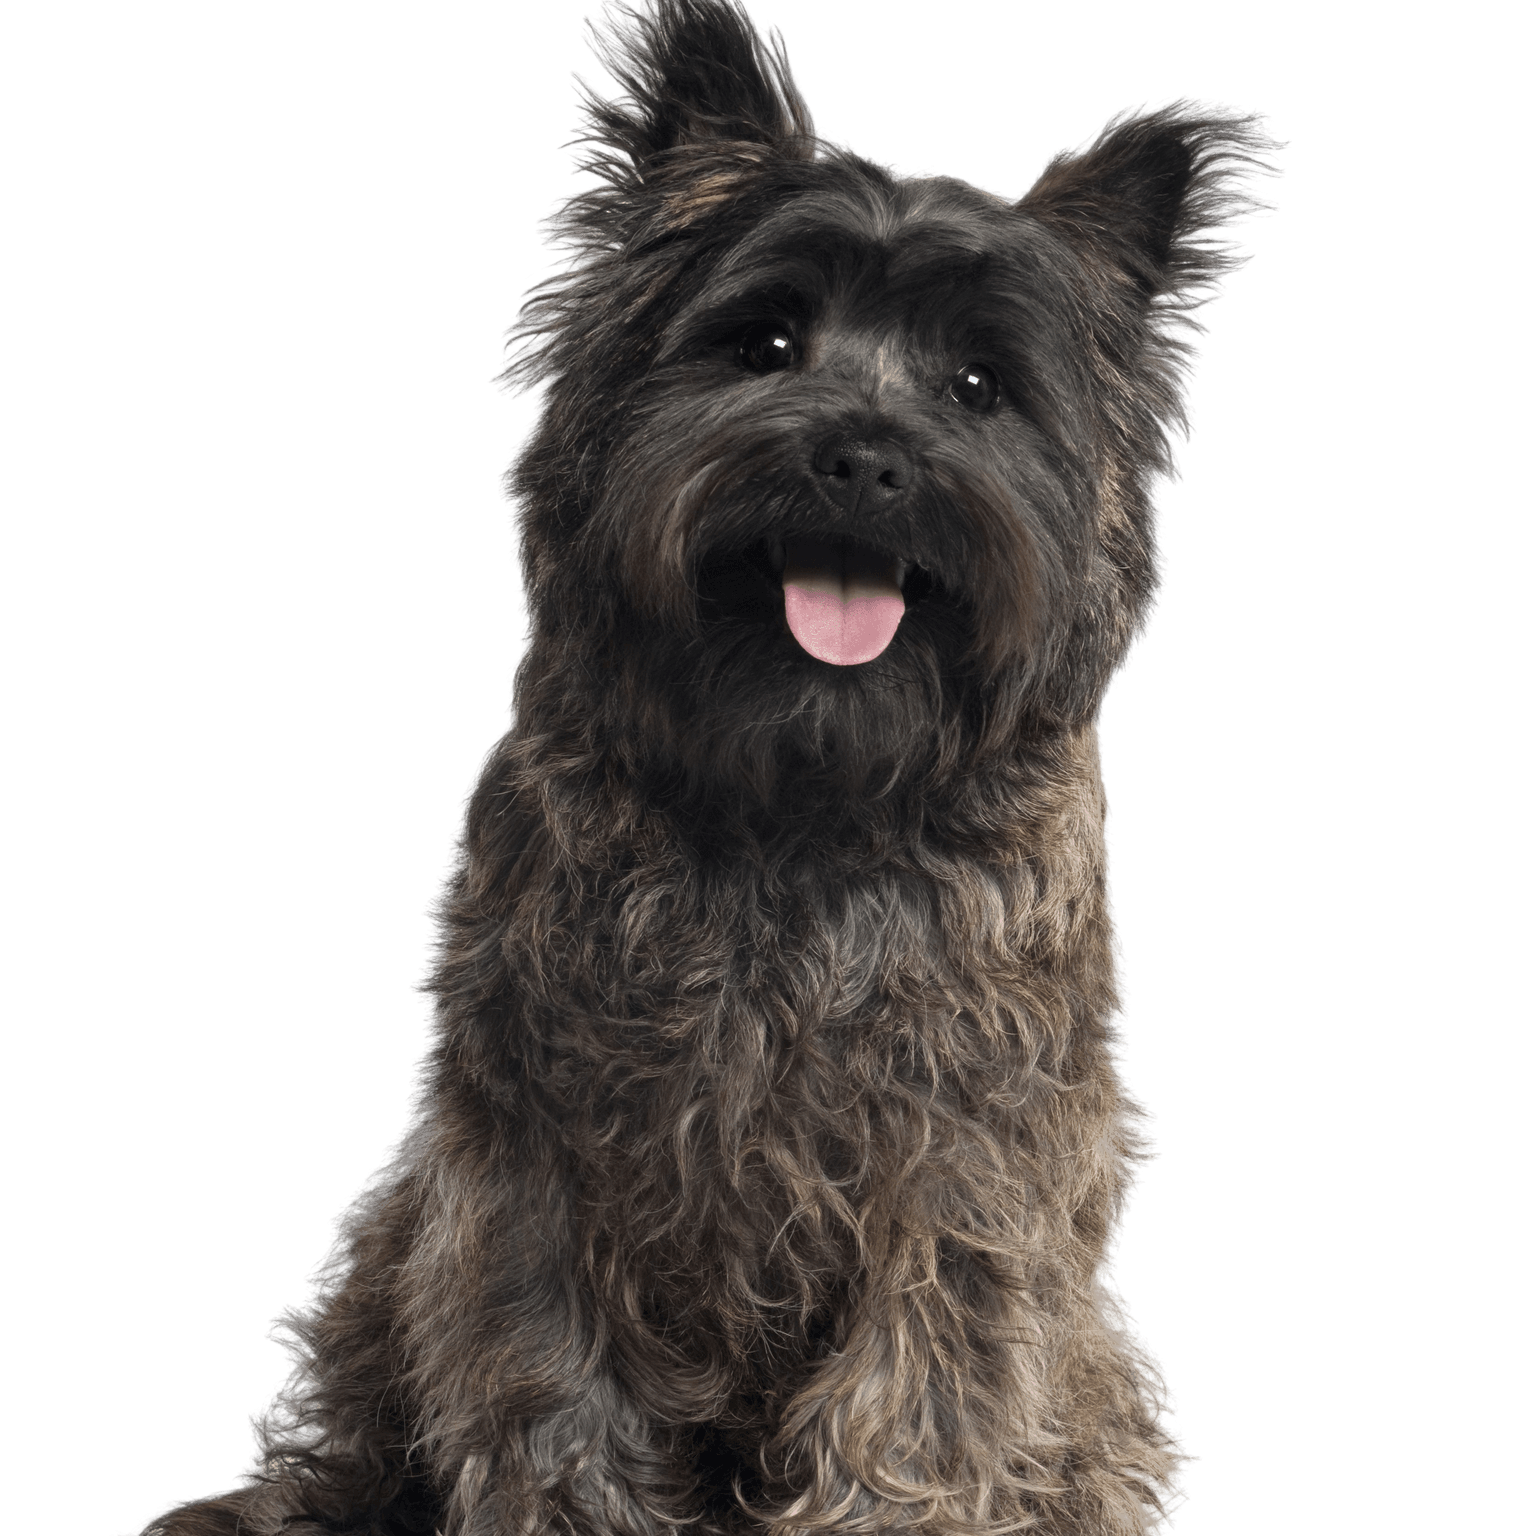 Profil du Cairn Terrier Image du chien